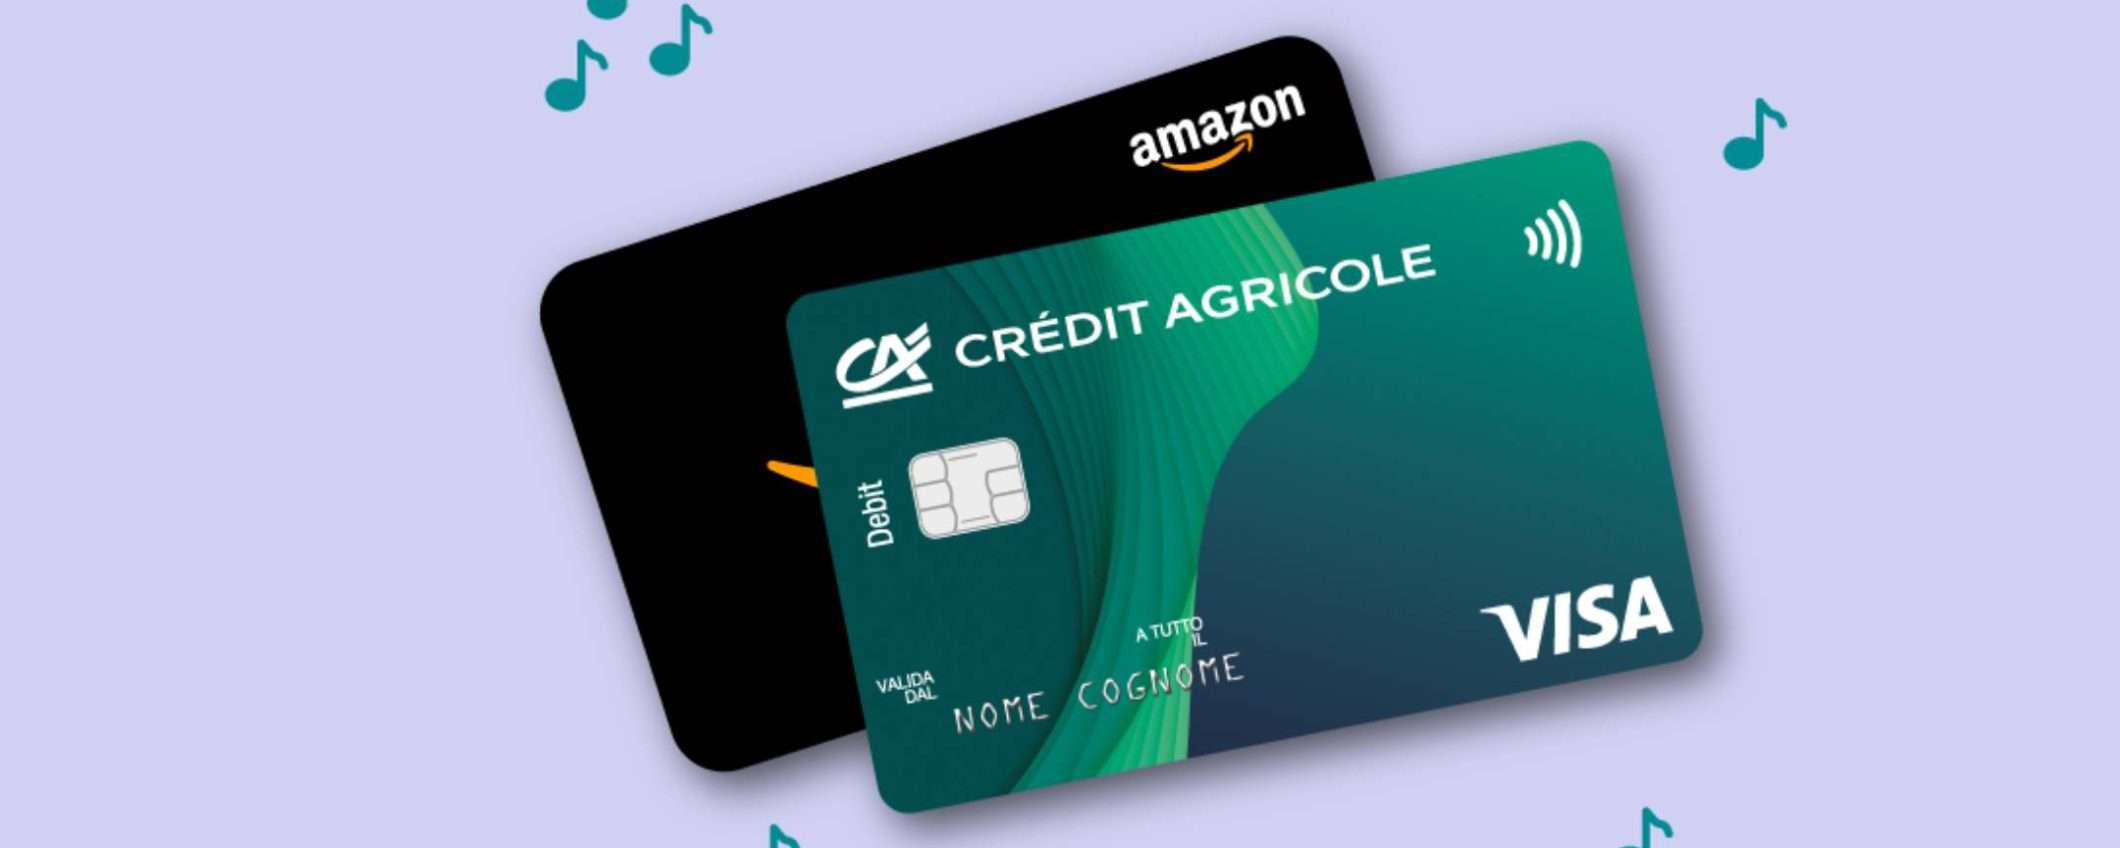 Crédit Agricole: conto senza canone e fino a 150€ in buoni Amazon